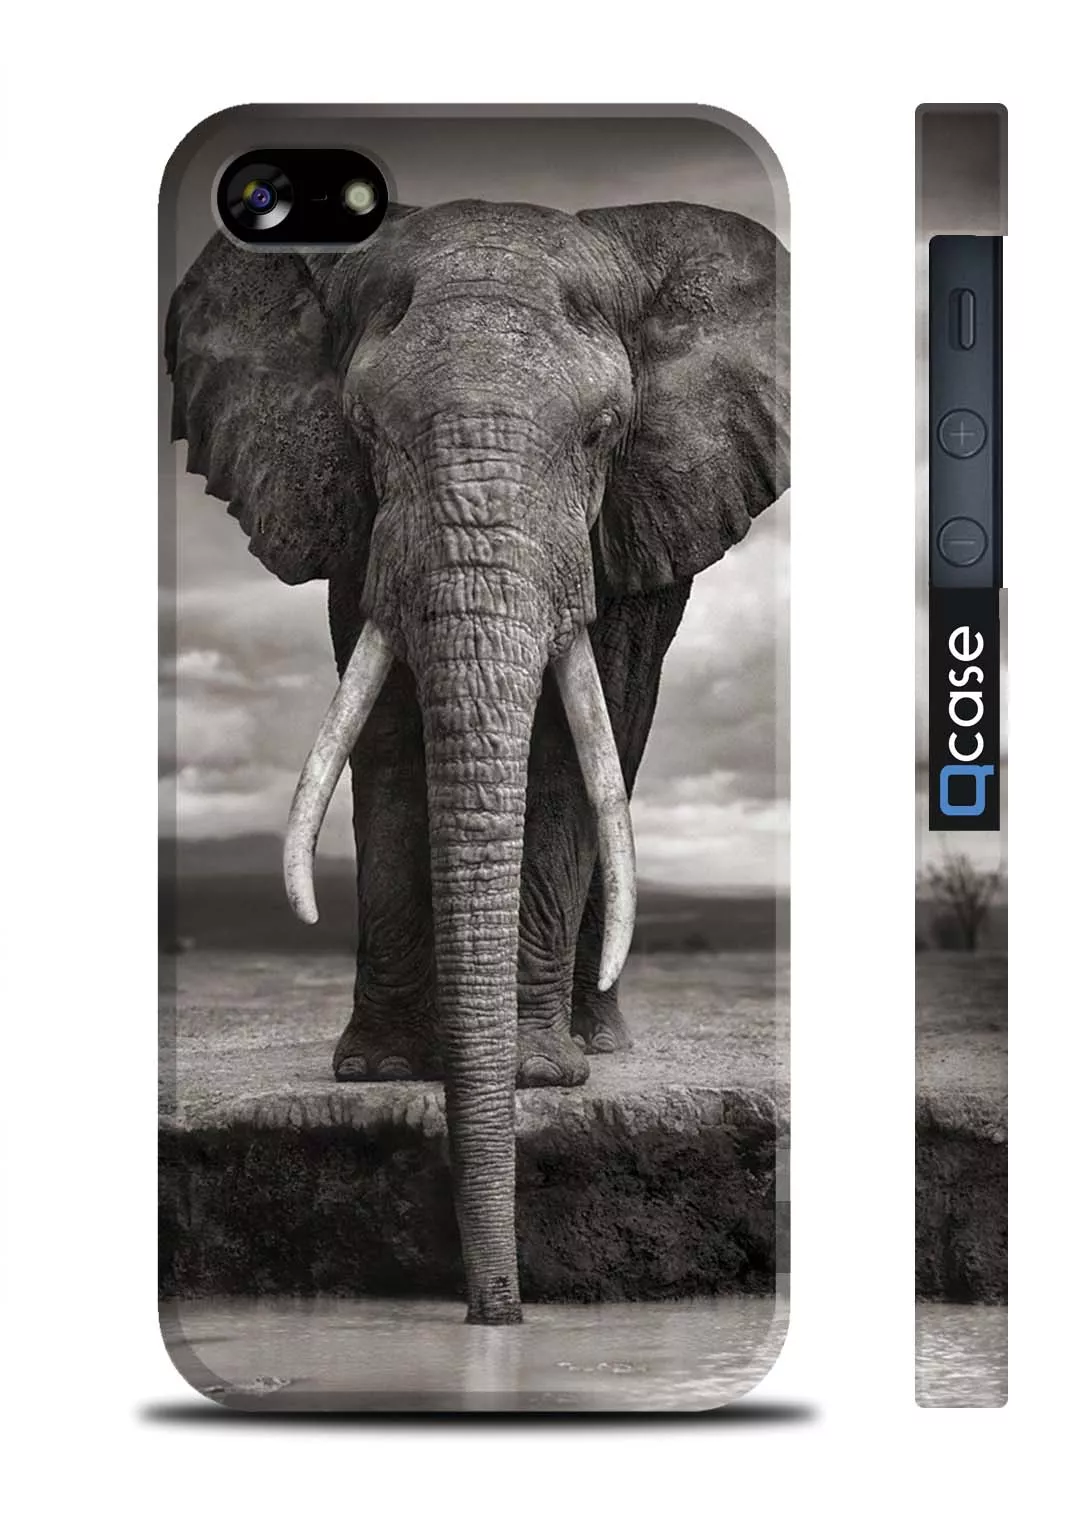 Чехол с фото большого красивого слона для iPhone 5, iPhone 5S